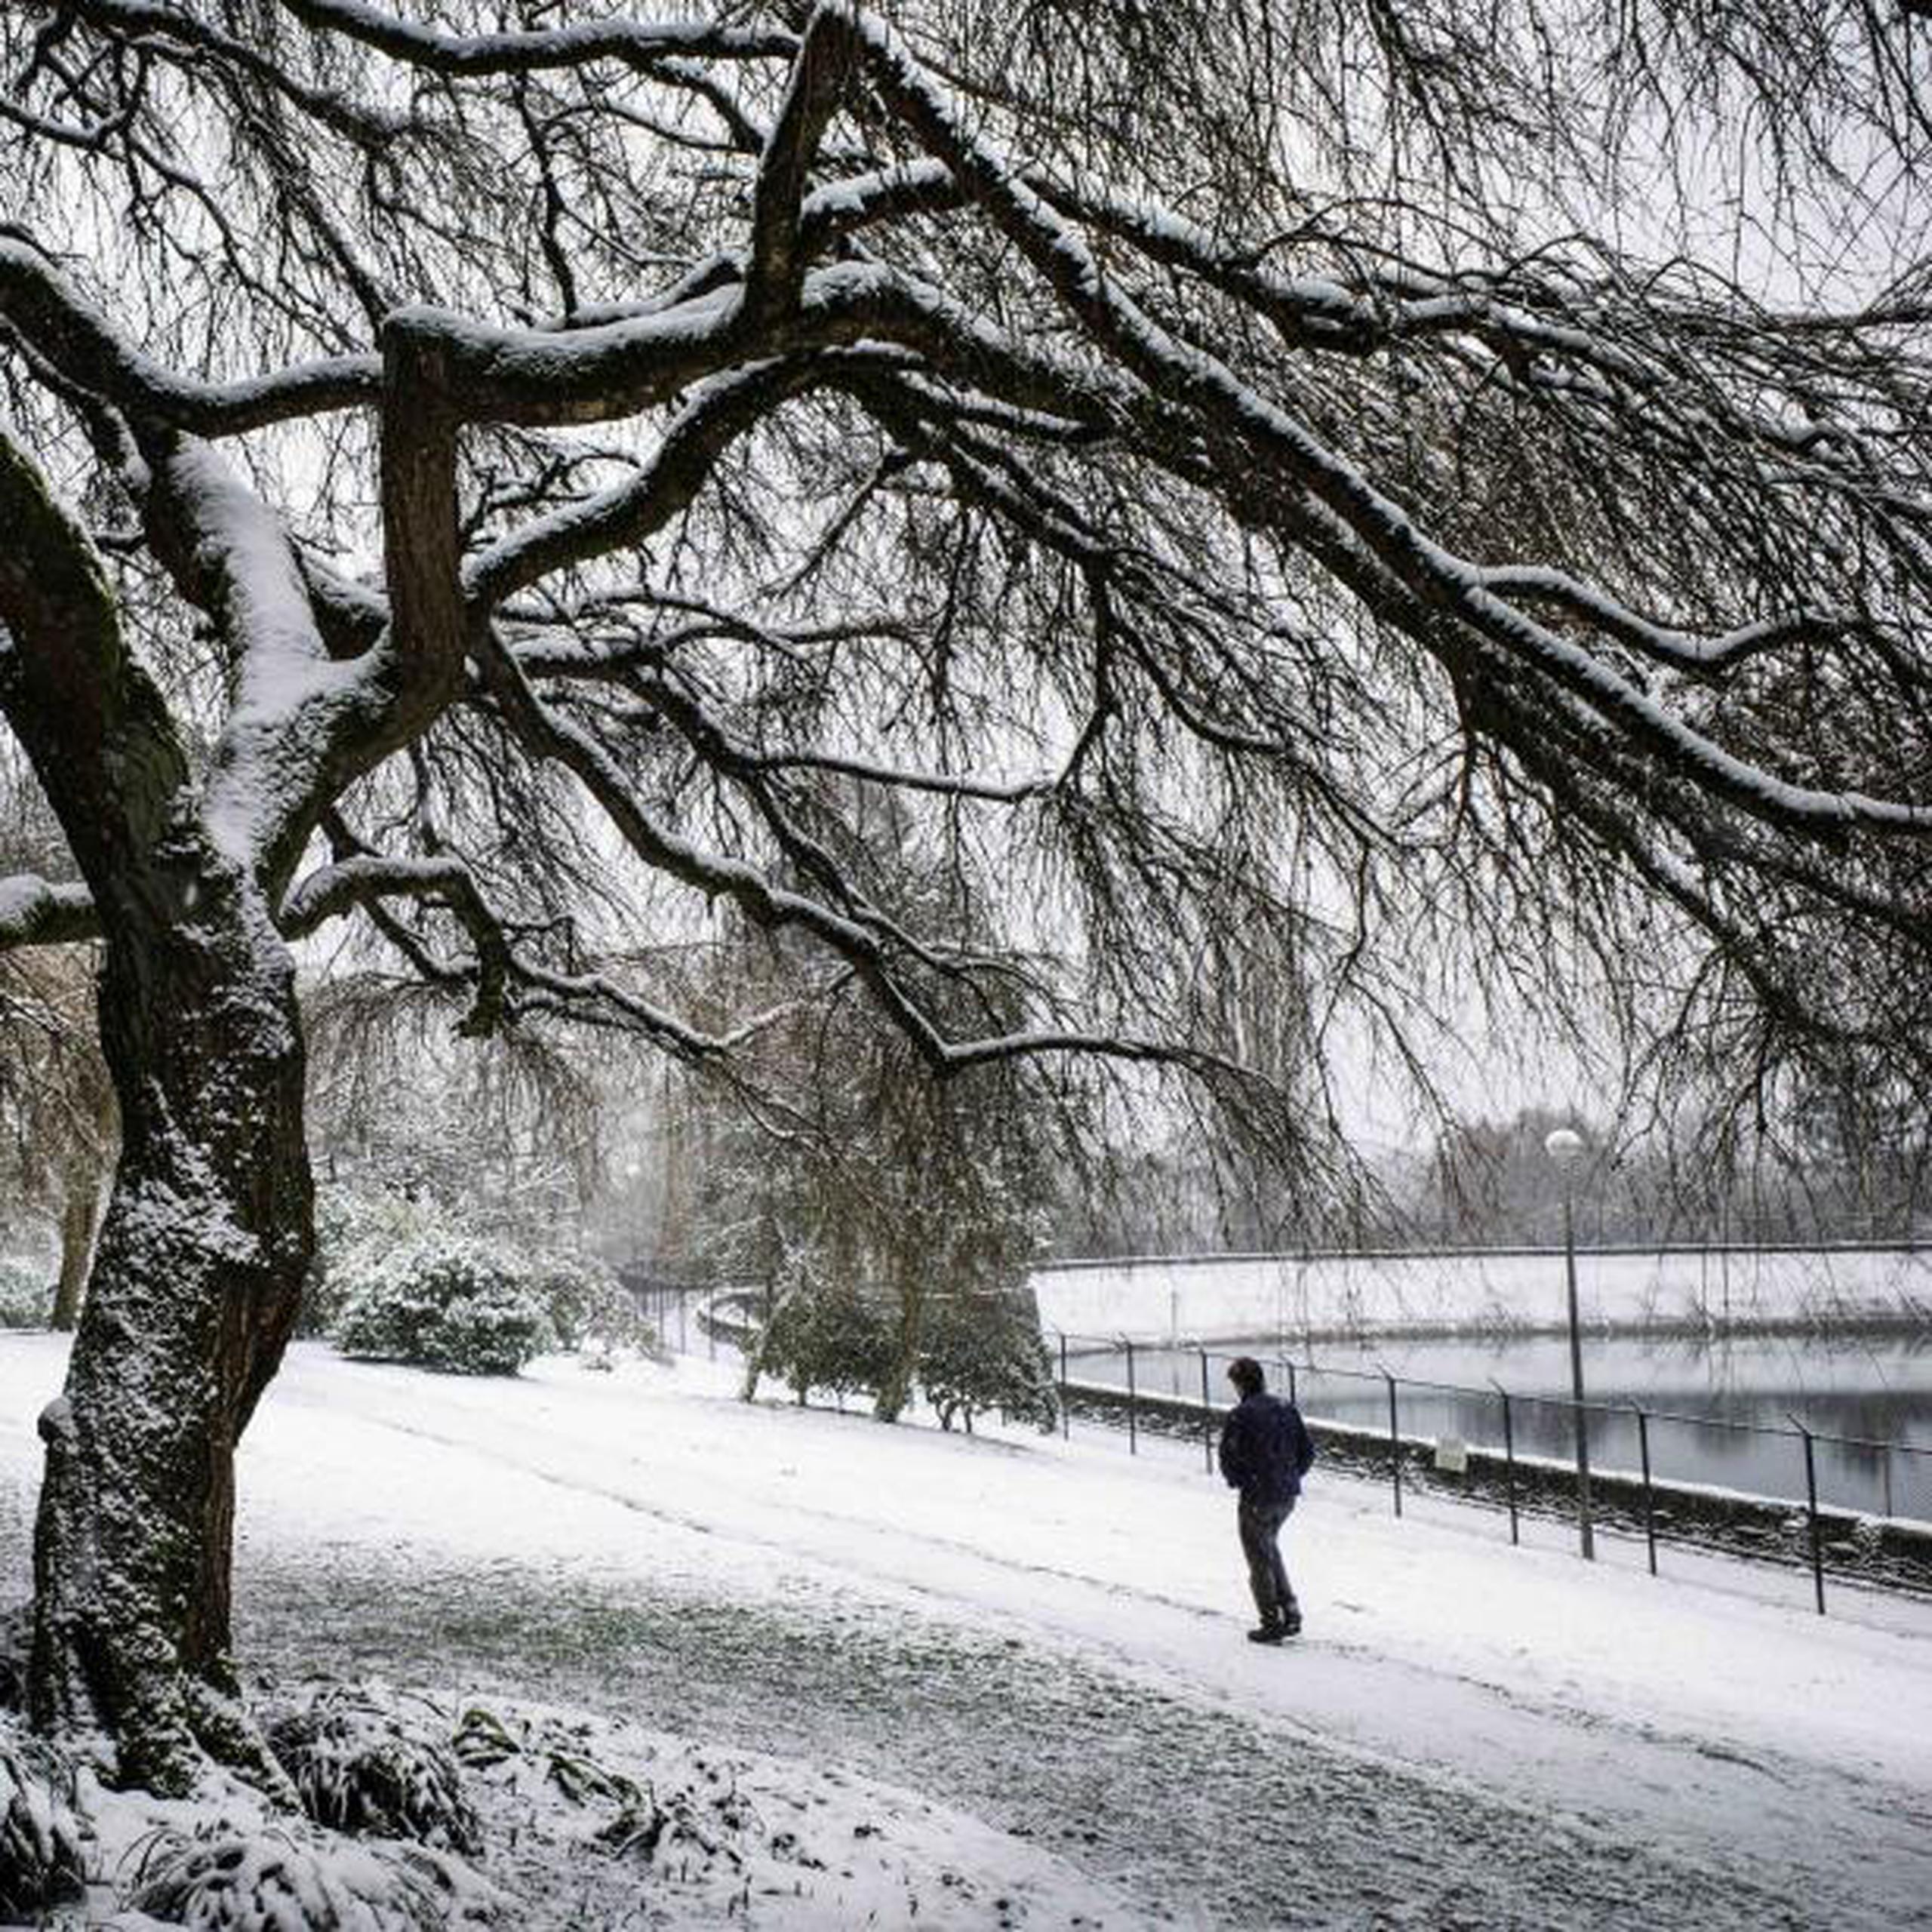 En Seattle se anunció que las escuelas públicas permanecerán cerradas debido a las nevadas. (Steve Ringman / The Seattle Times vía AP)